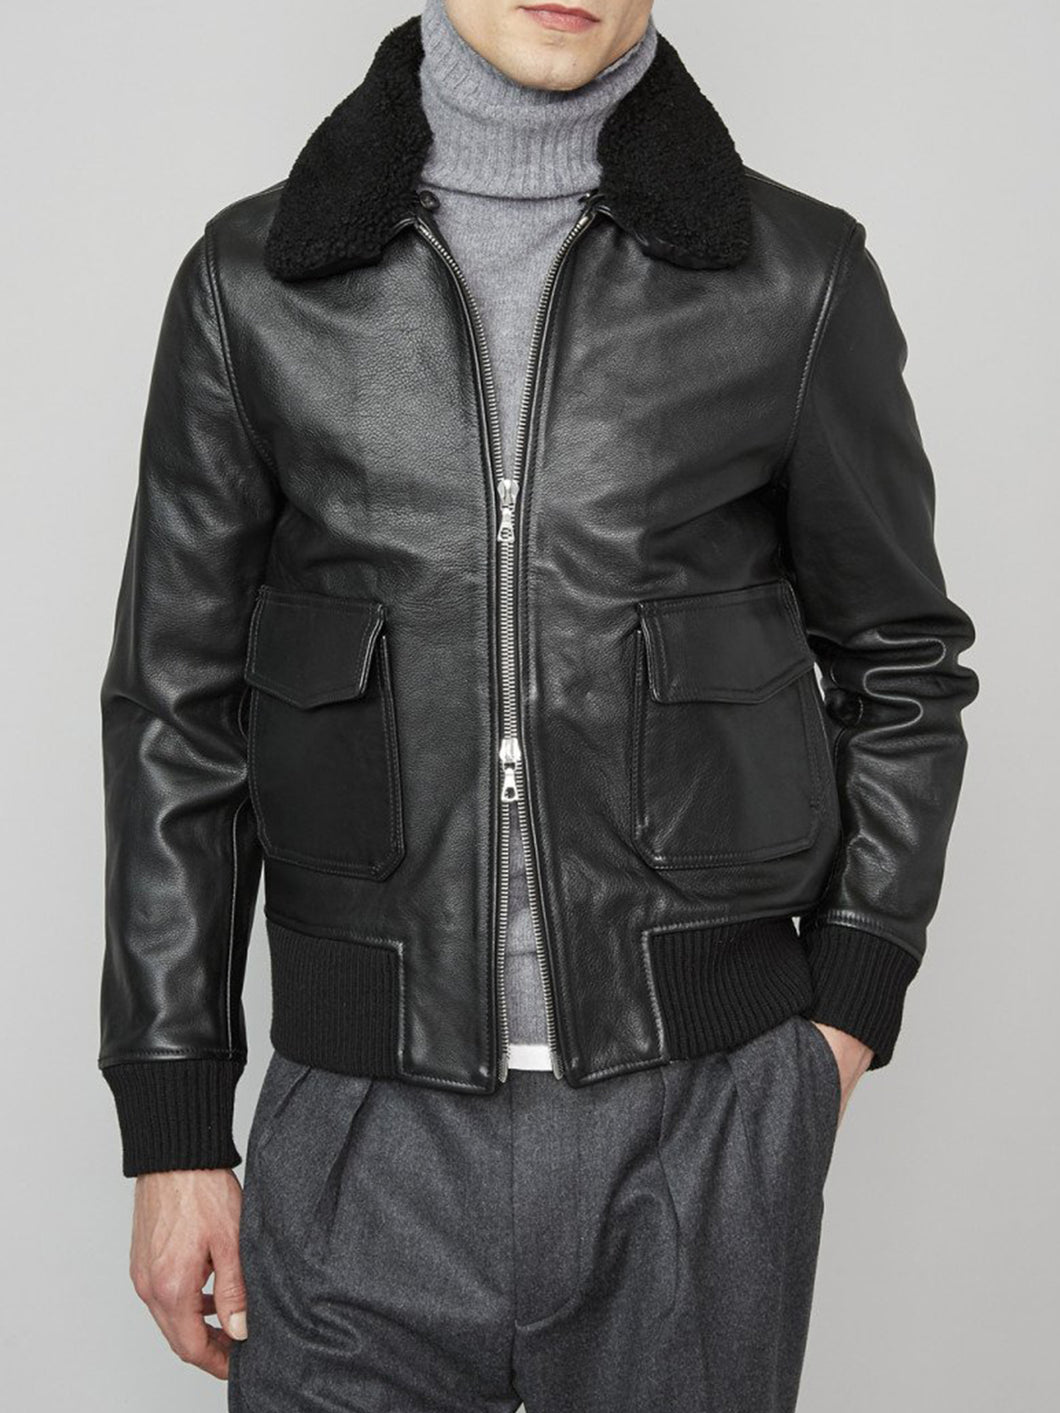 Mens Stylish Bomber Black Fur Leather Jacket